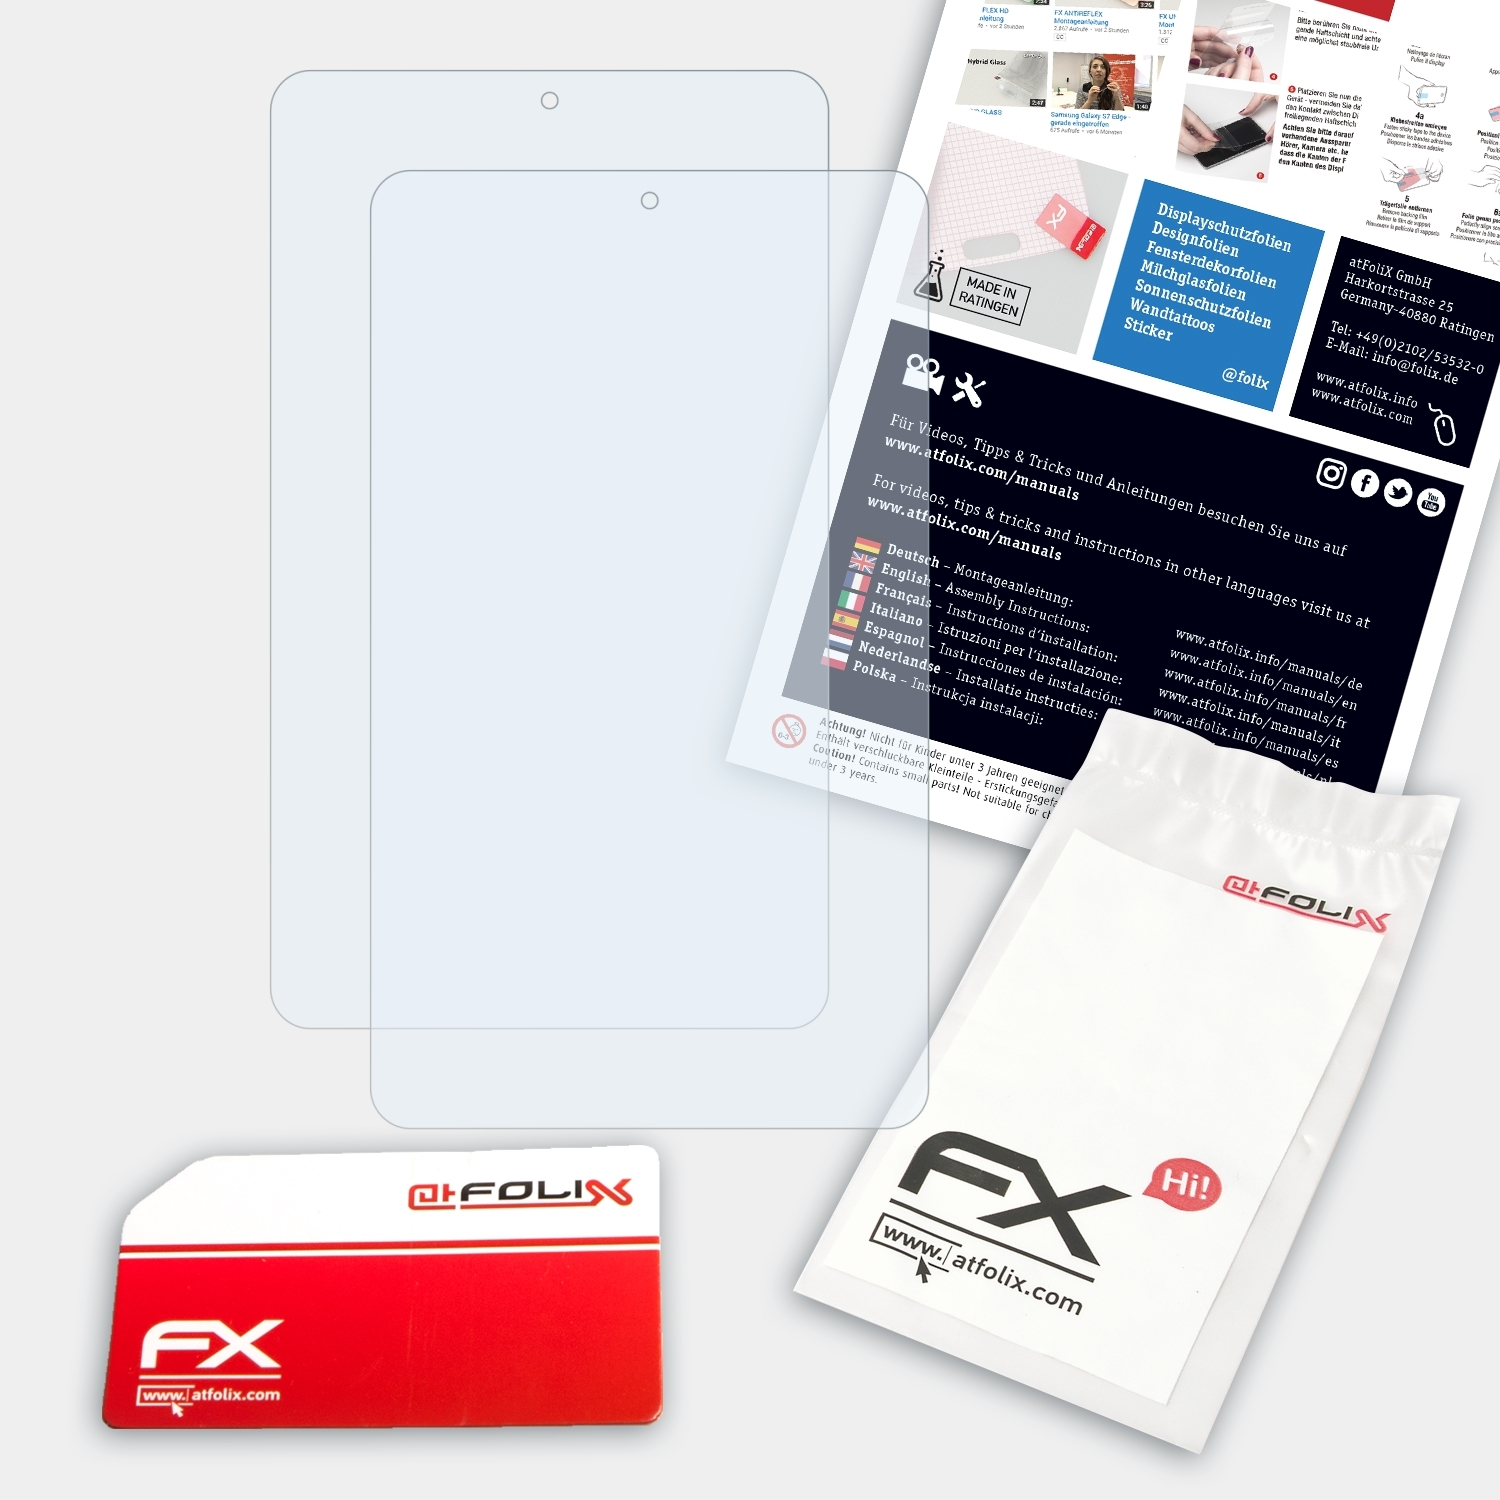 Touch 8) One FX-Clear Alcatel Pixi 2x ATFOLIX Displayschutz(für